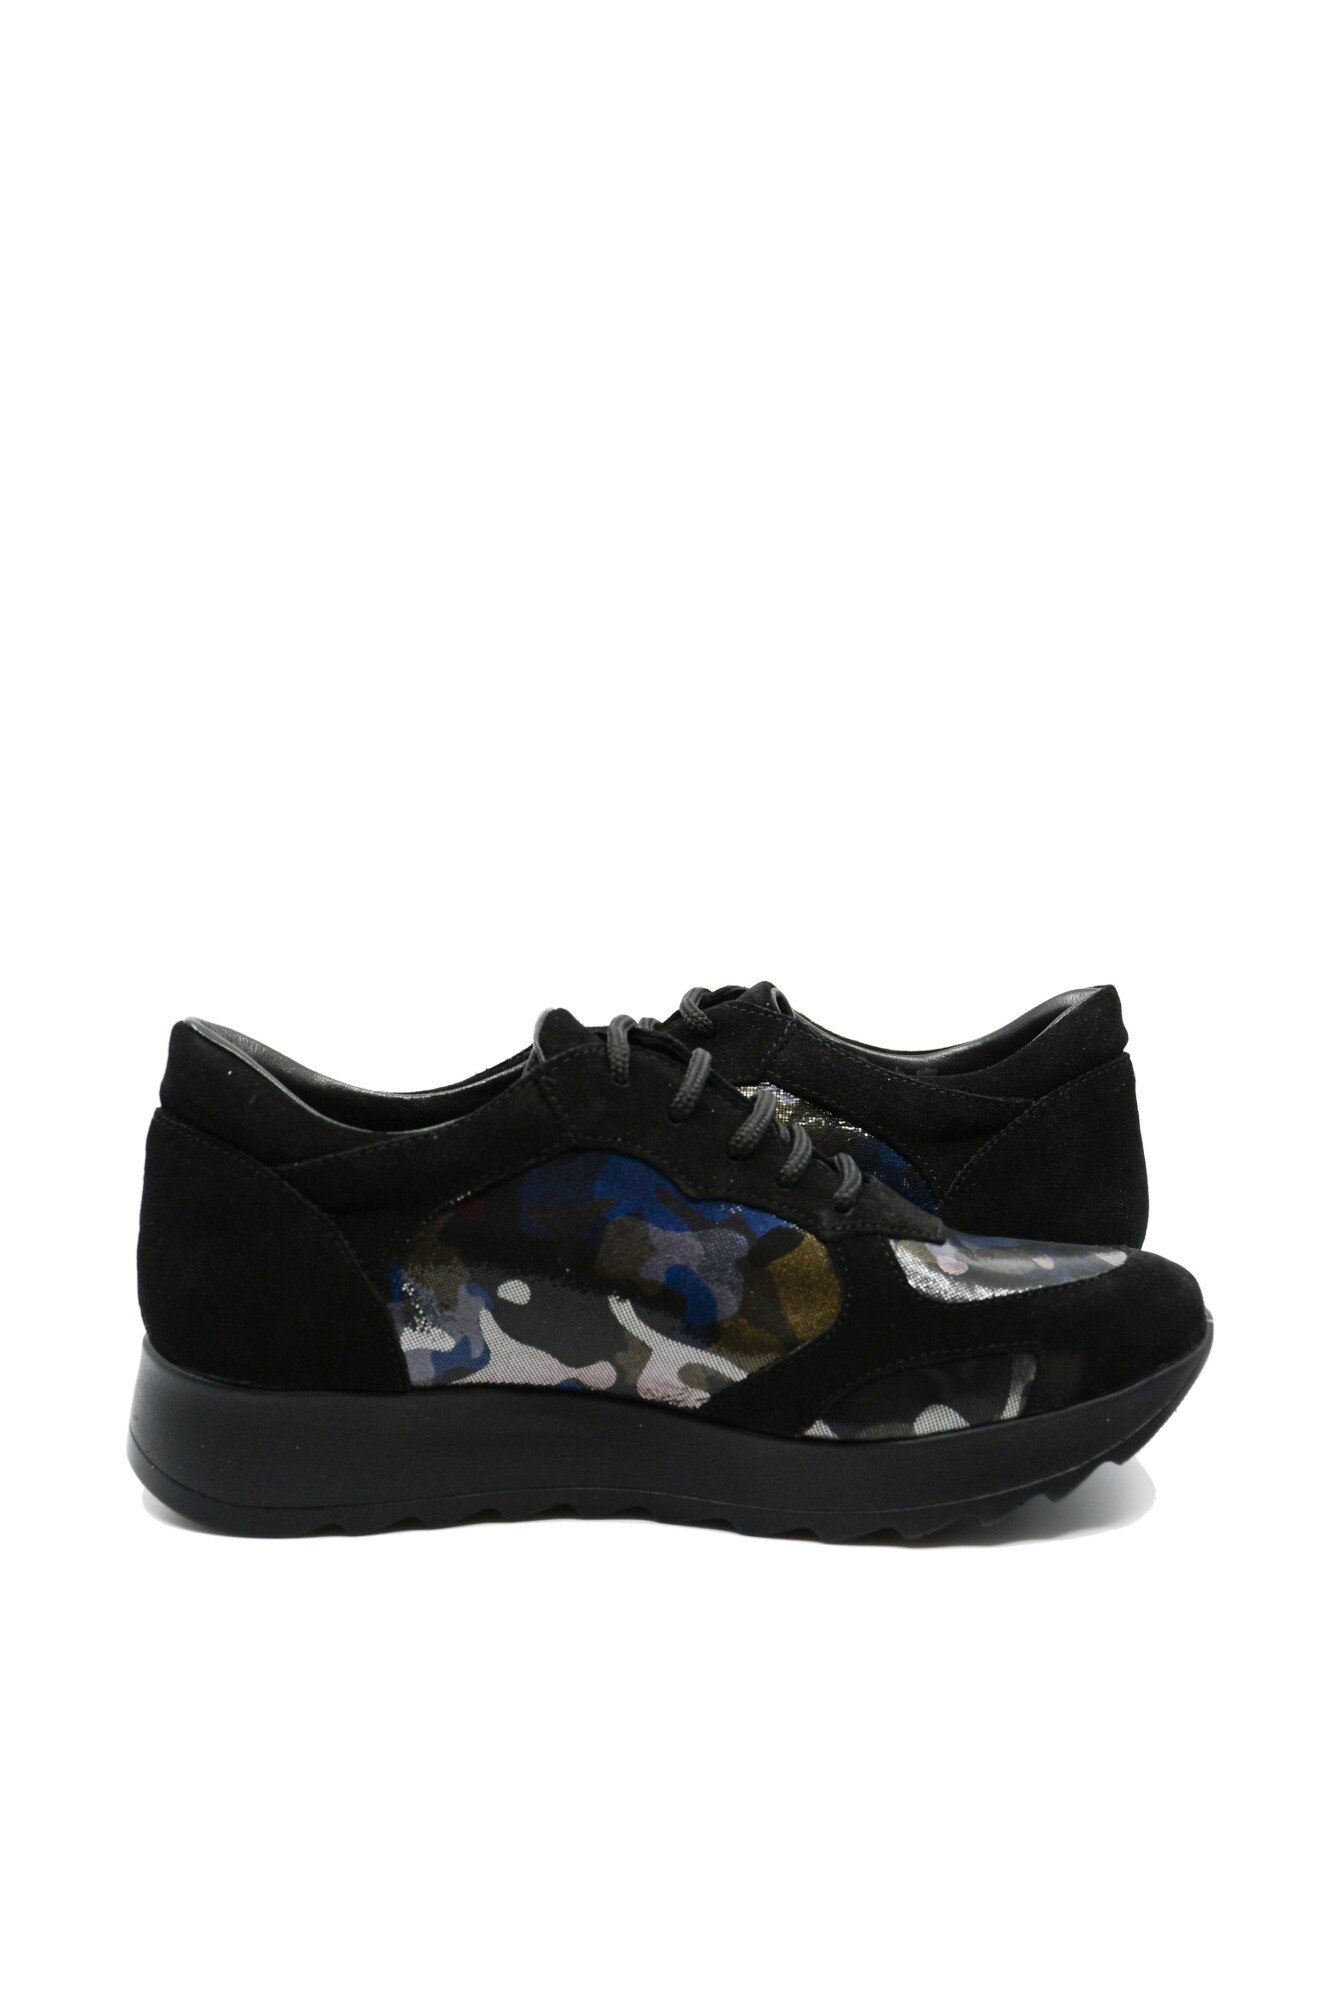 web gallery operation Pantofi sport dama Cadenzza Hebe, velur negru si imprimeu color, 39 EU -  eMAG.ro